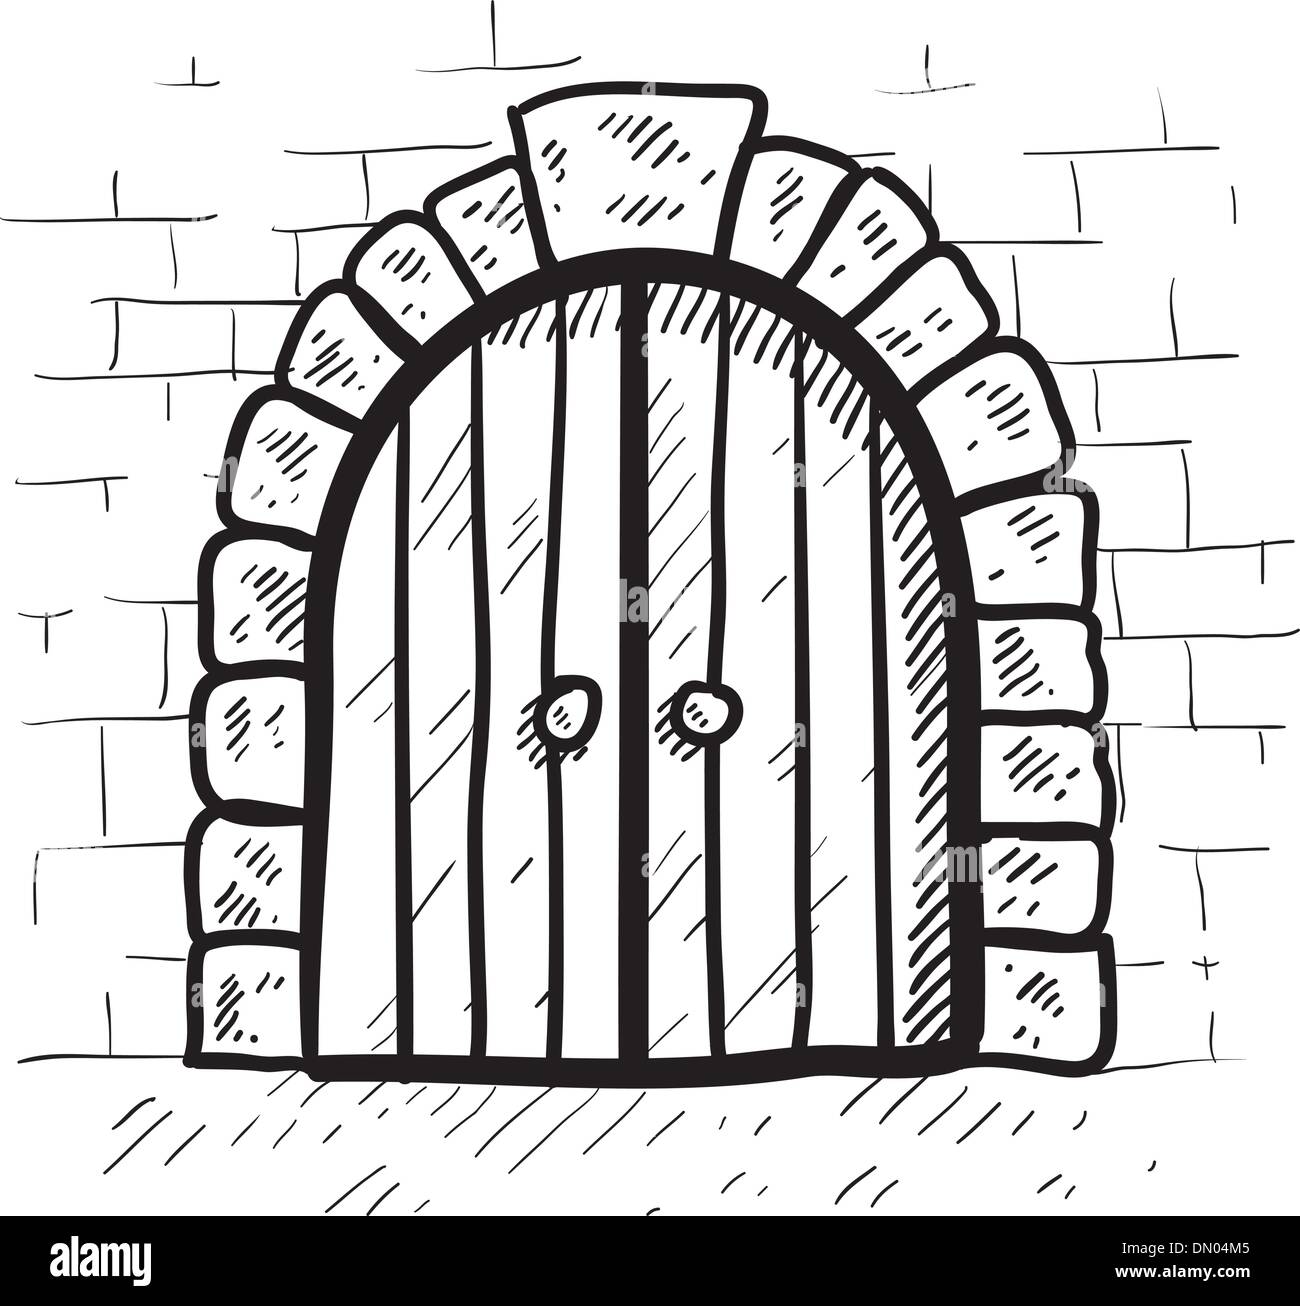 Ilustración Vectorial De La Cerradura En La Puerta Exterior De Árbol  Ilustraciones svg, vectoriales, clip art vectorizado libre de derechos.  Image 35518310